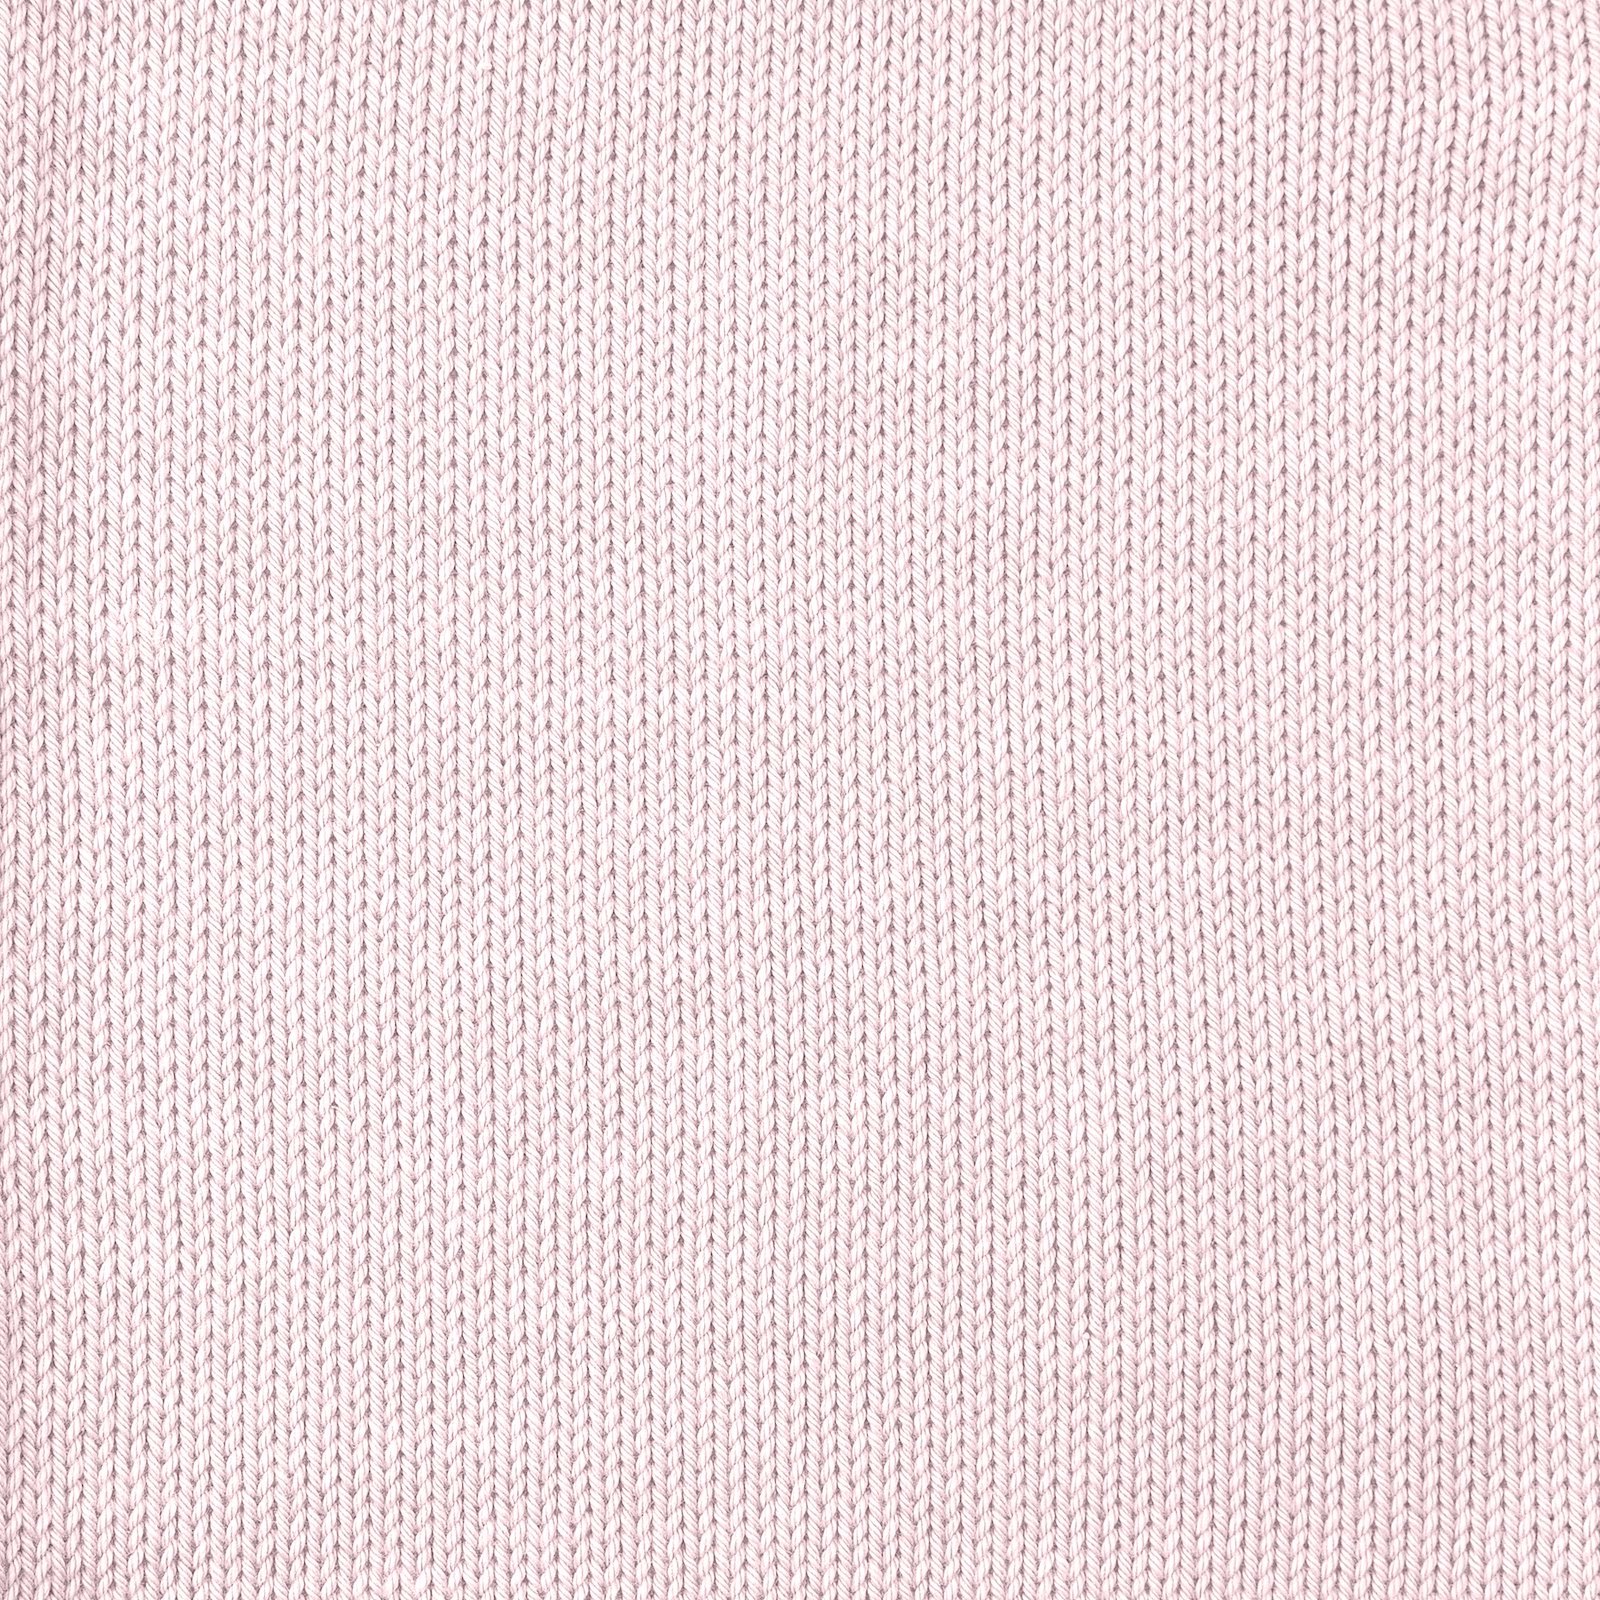 FRAYA, 100% cotton 8/4  yarn  "Colourful", soft rose 90060088_sskit